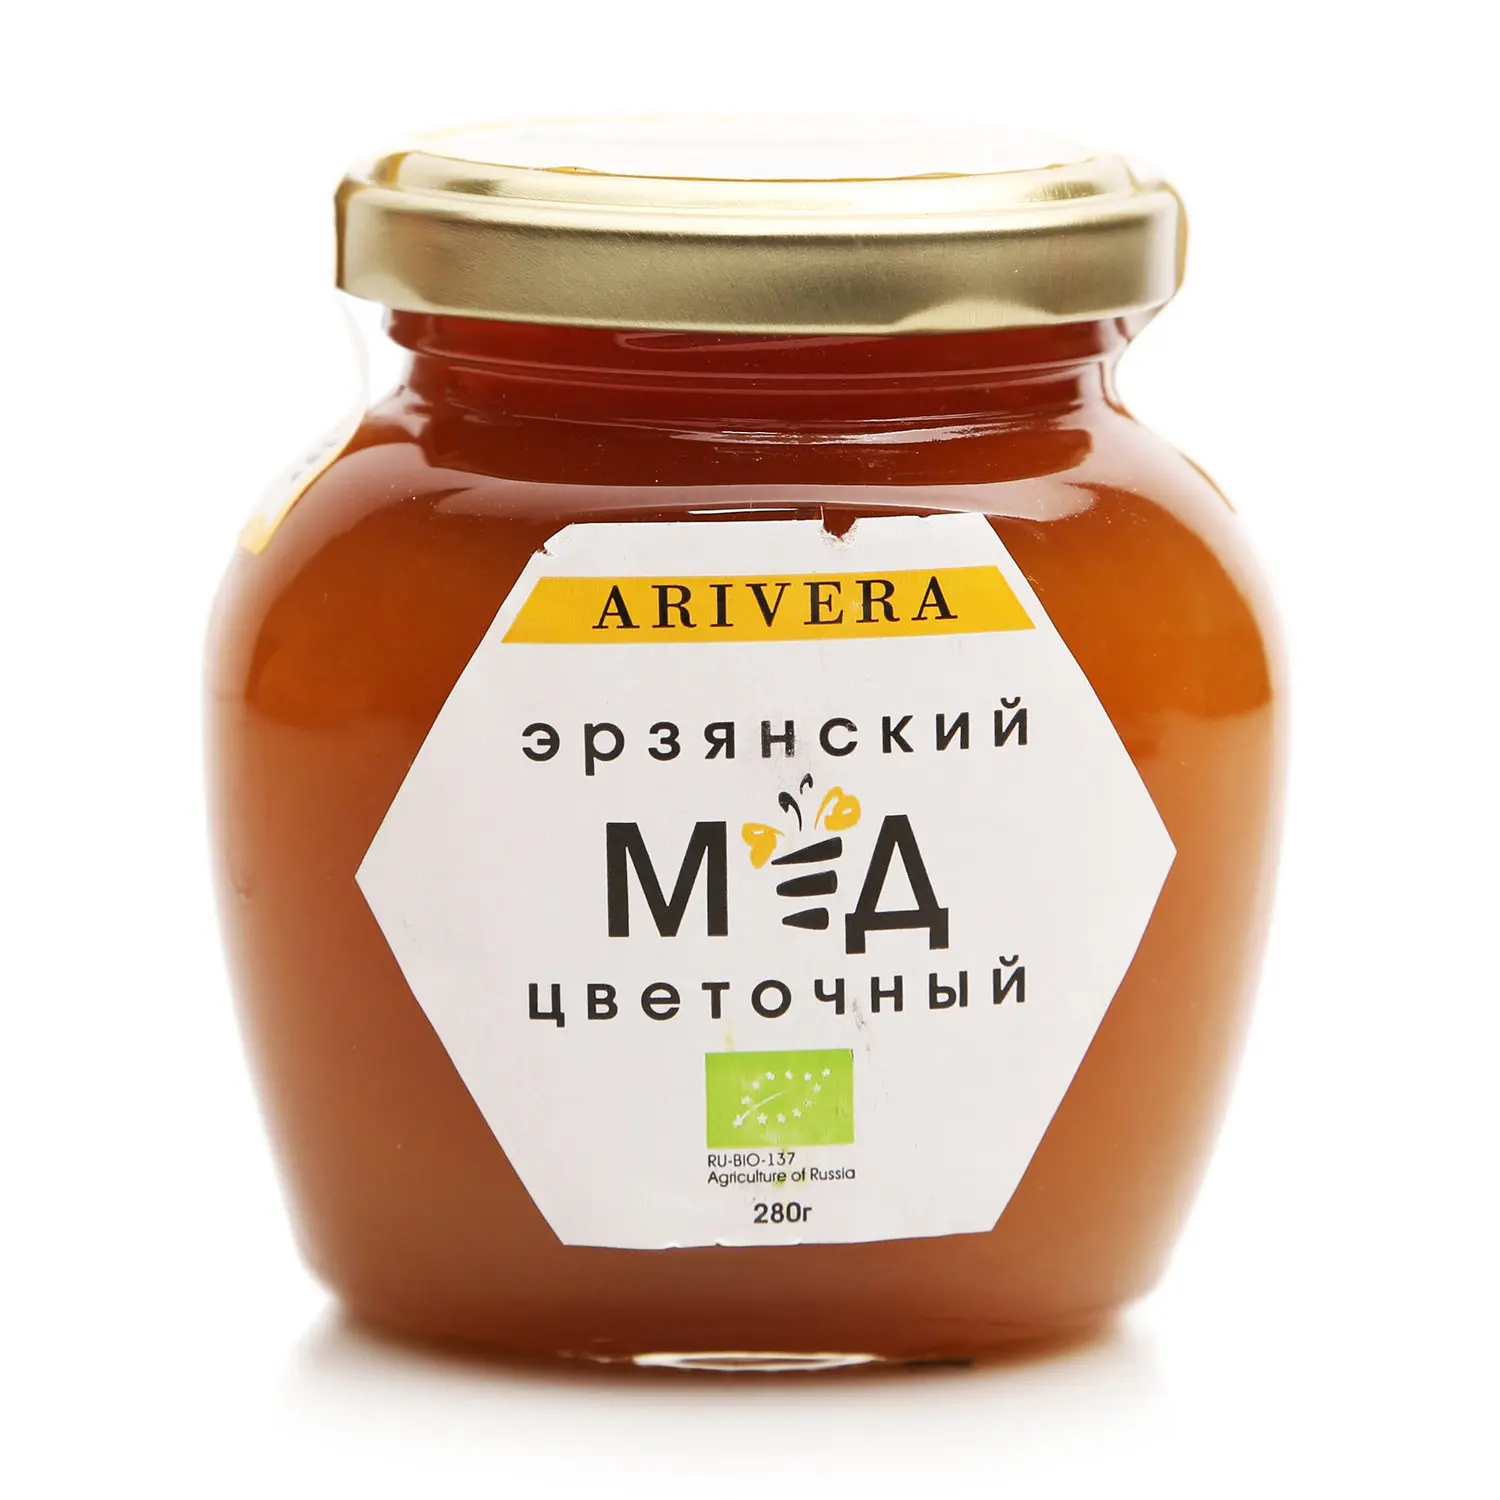 Эрзянский мед цветочный ТМ Arivera (Аривера) | Продукты